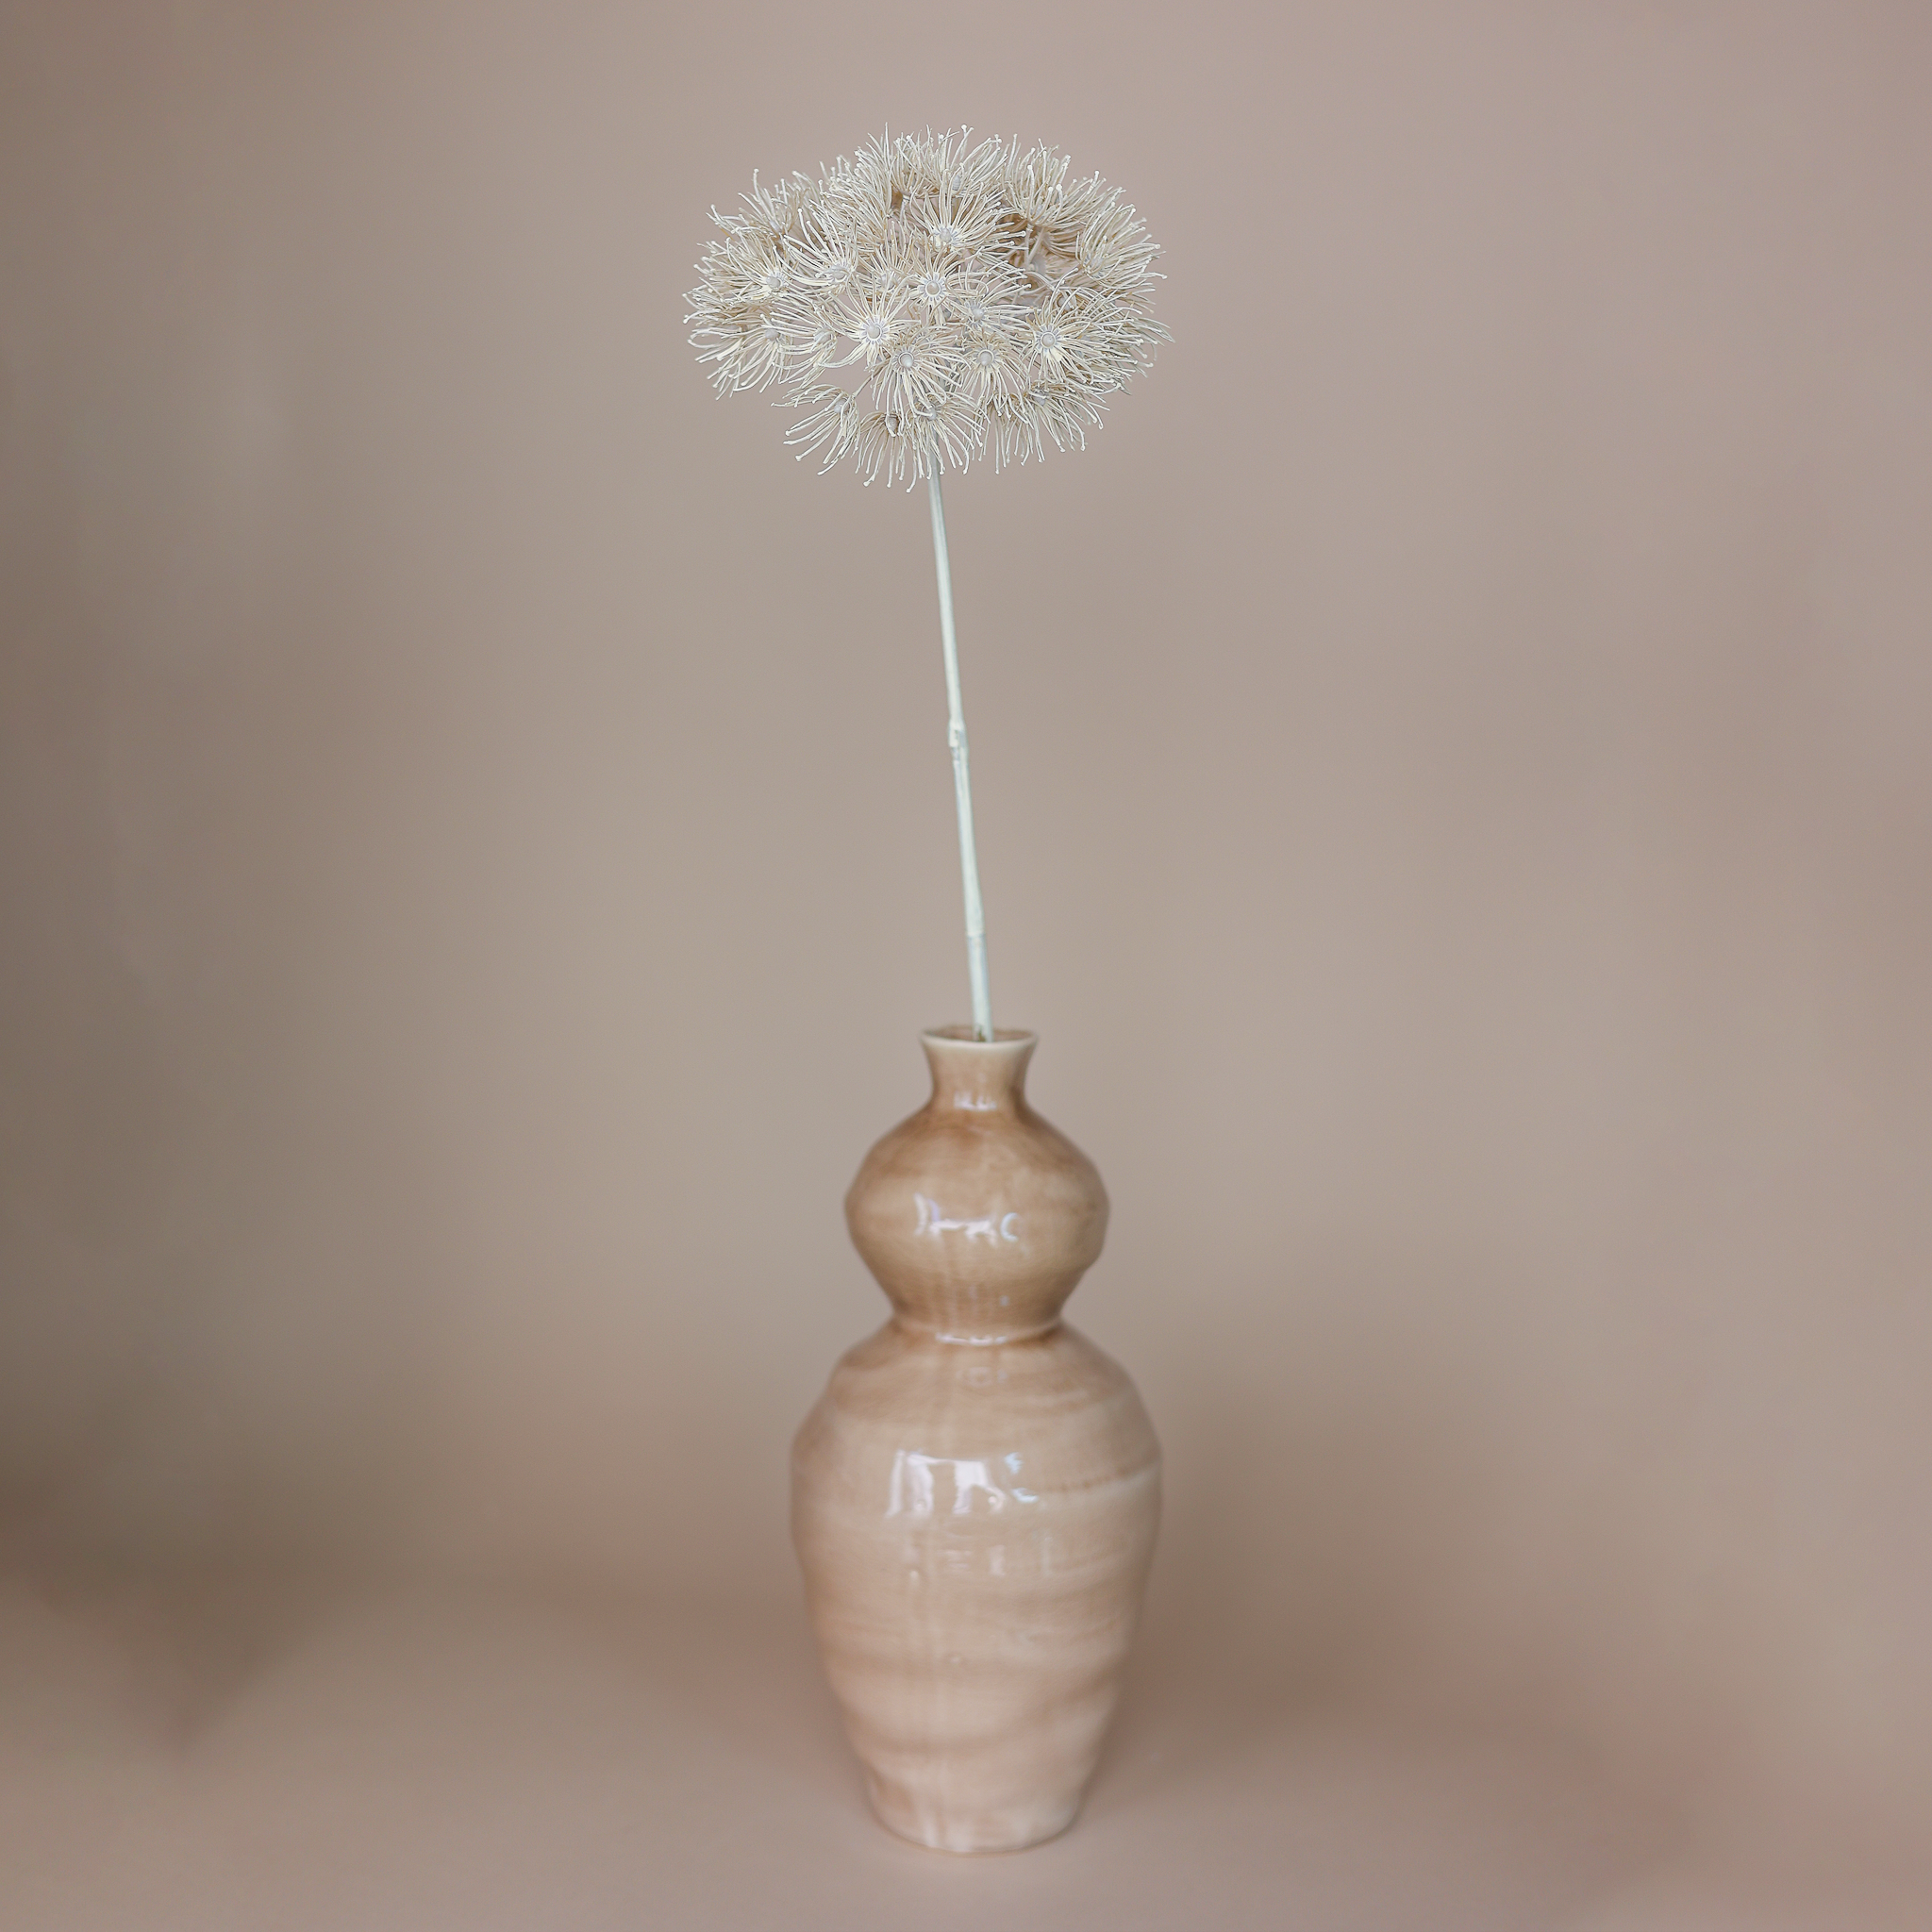 Fritz Set Allium Blüte & Vase Keramik 